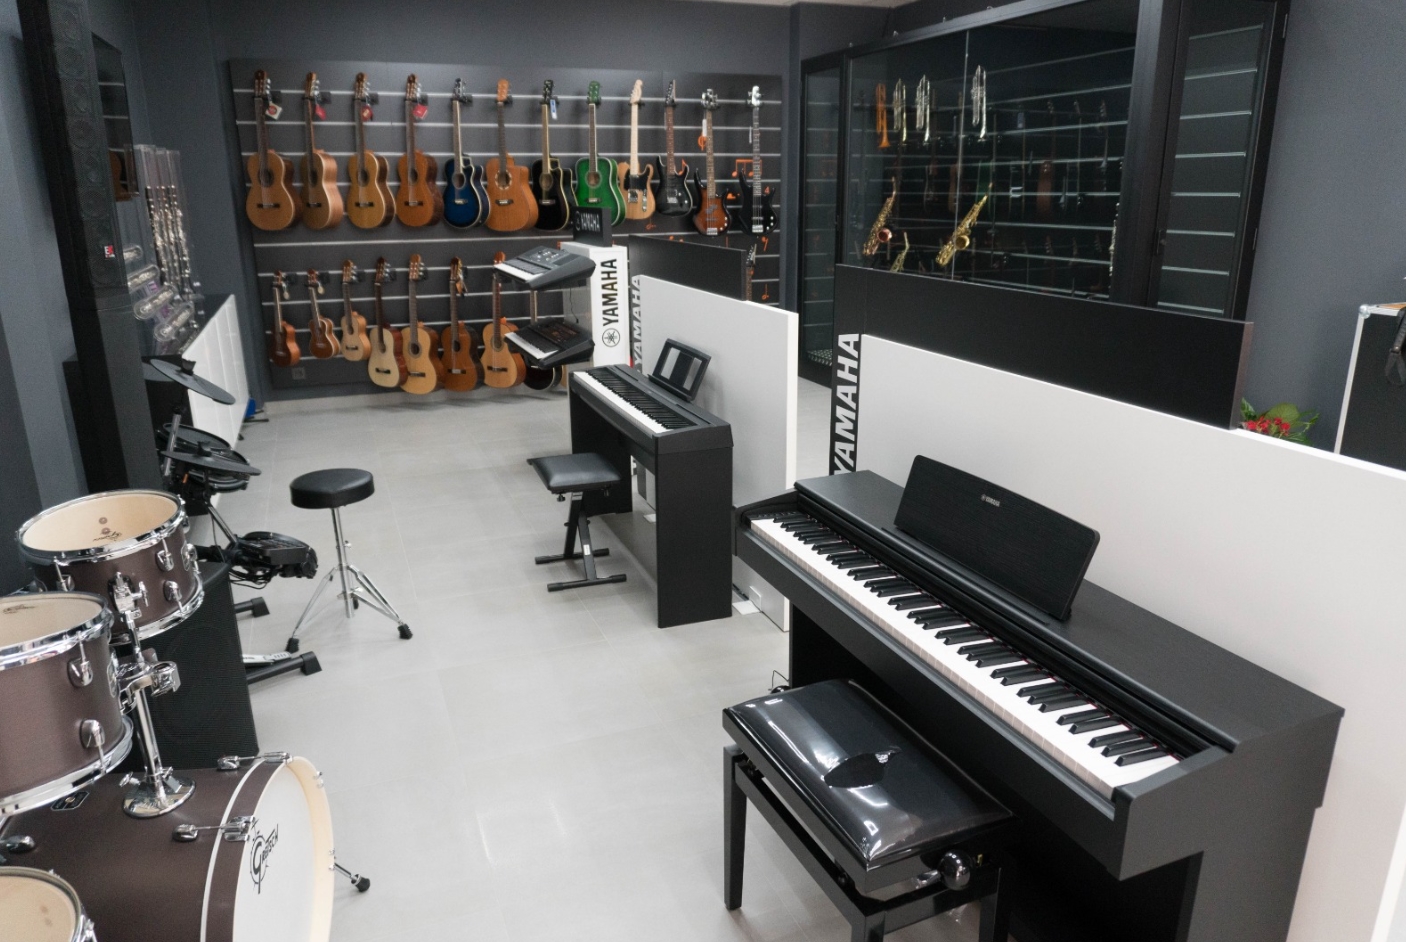 ¿Cómo se almacenan los instrumentos musicales? Innovación en el Almacenamiento de Instrumentos Musicales.